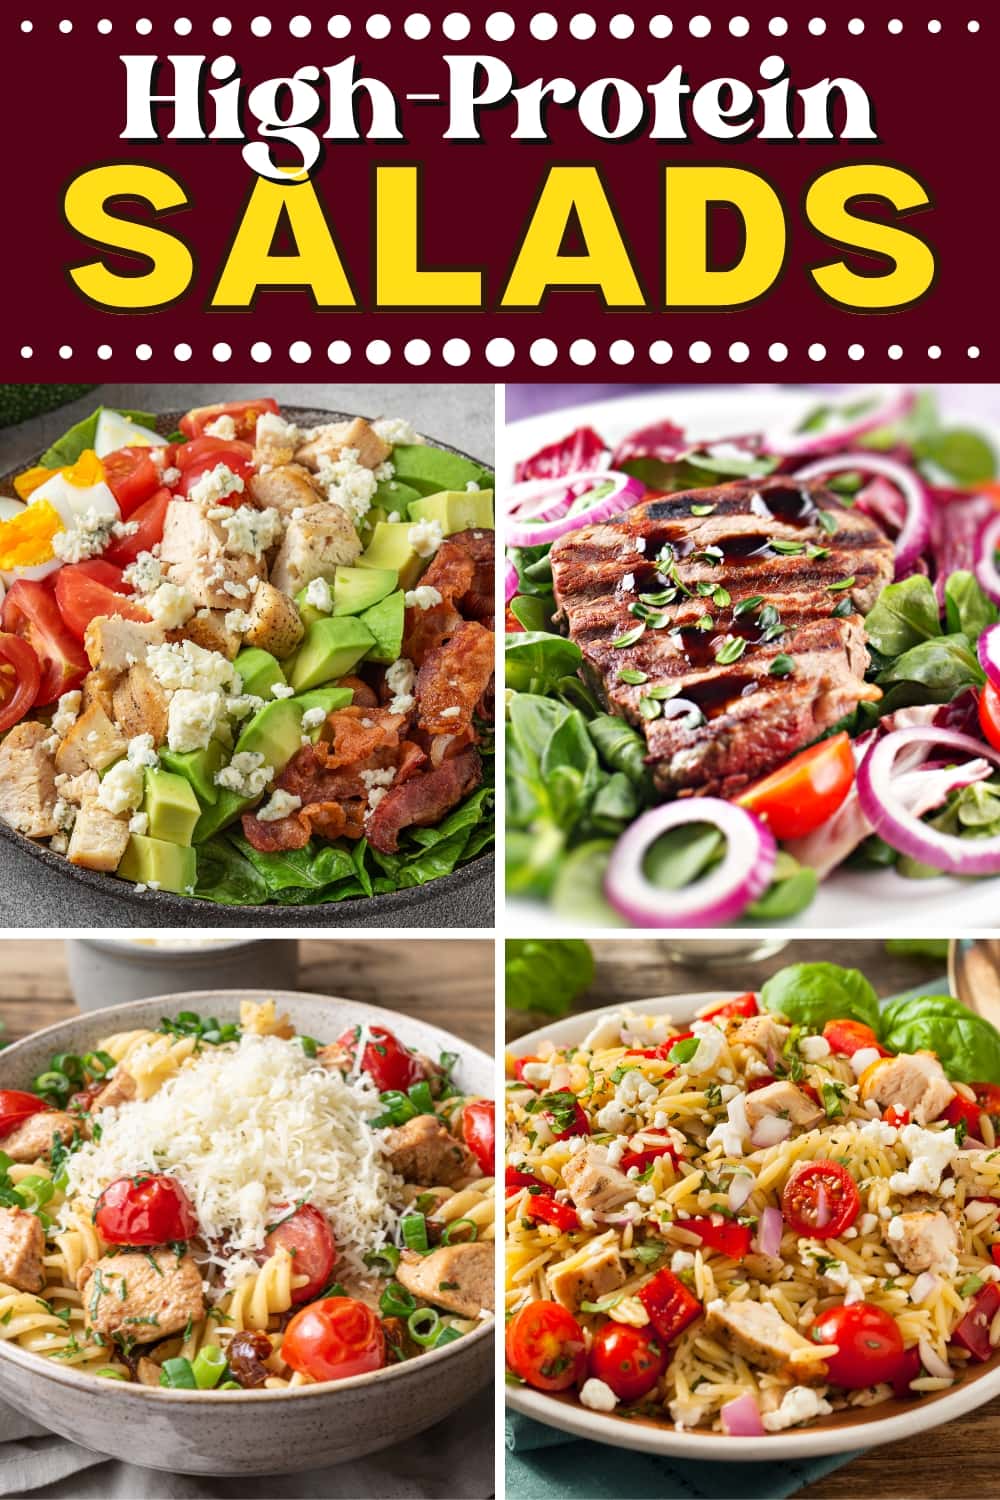 High-Protein Salads